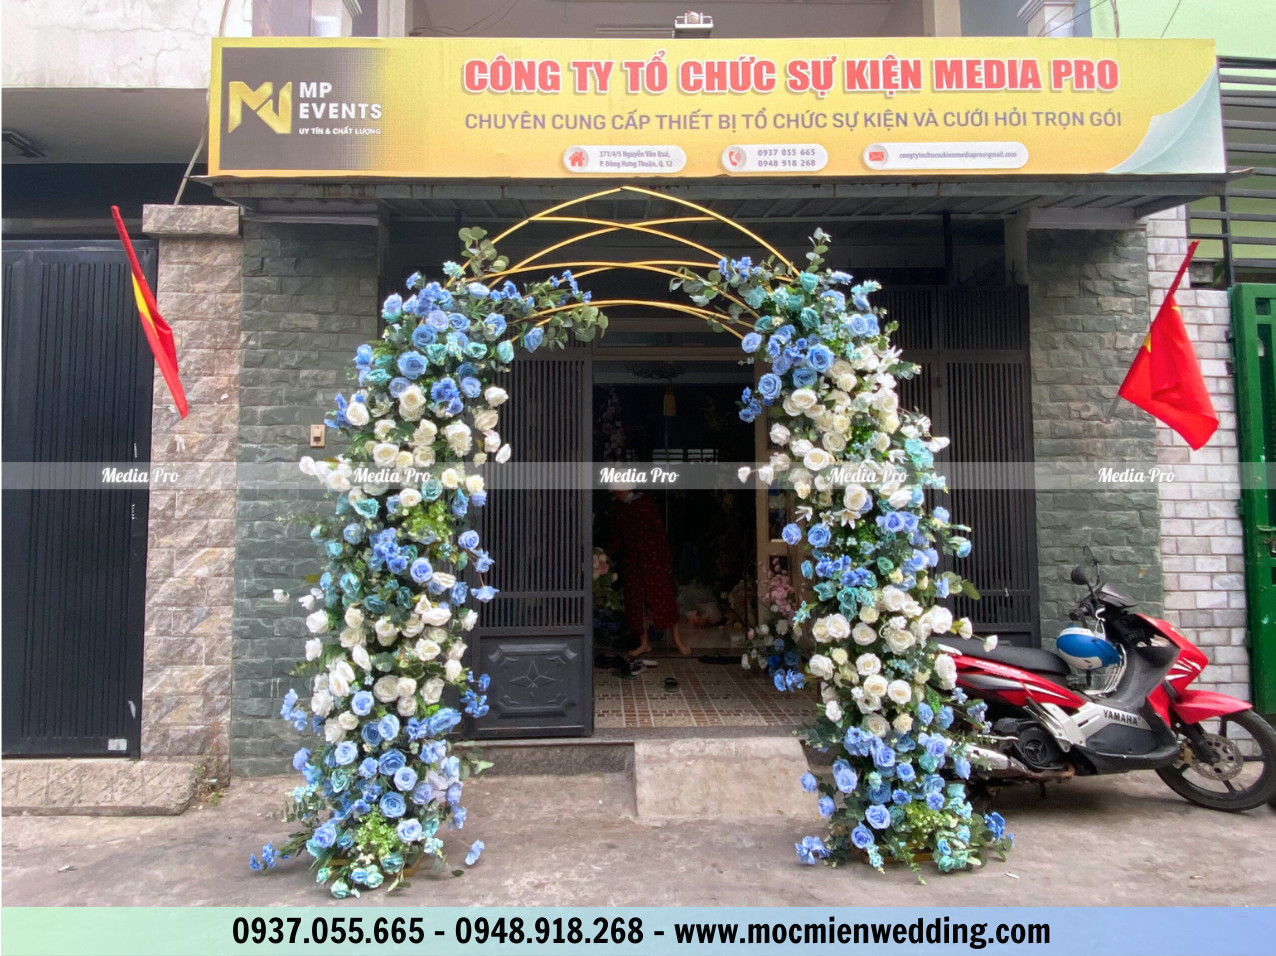 Địa chỉ bán cổng hoa giá rẻ tại tphcm